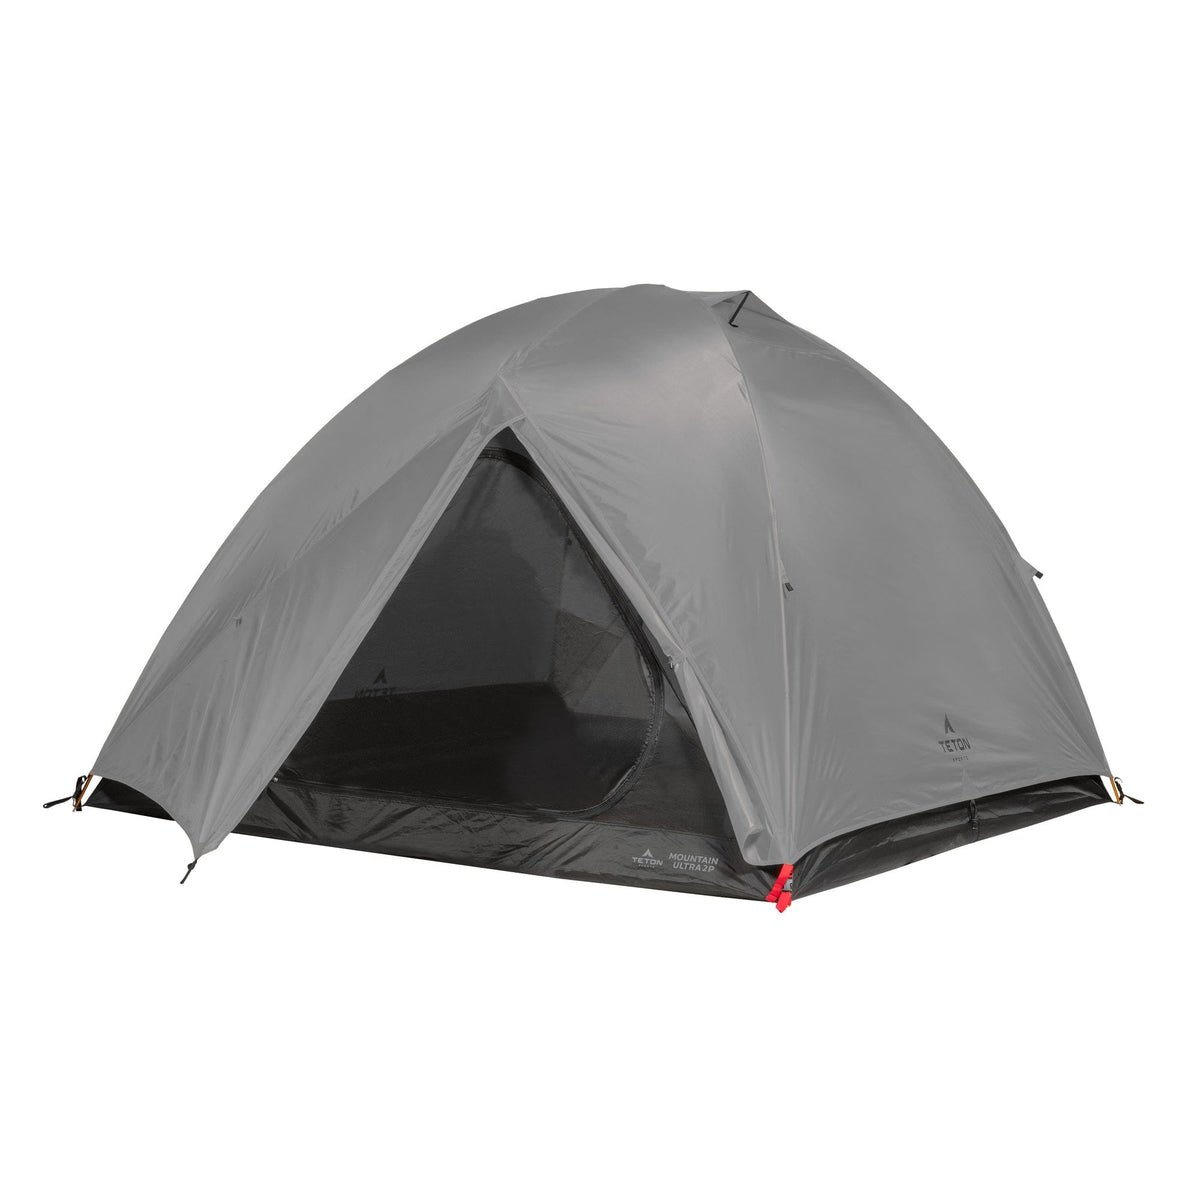 Camping Backpacking Tents | TETON